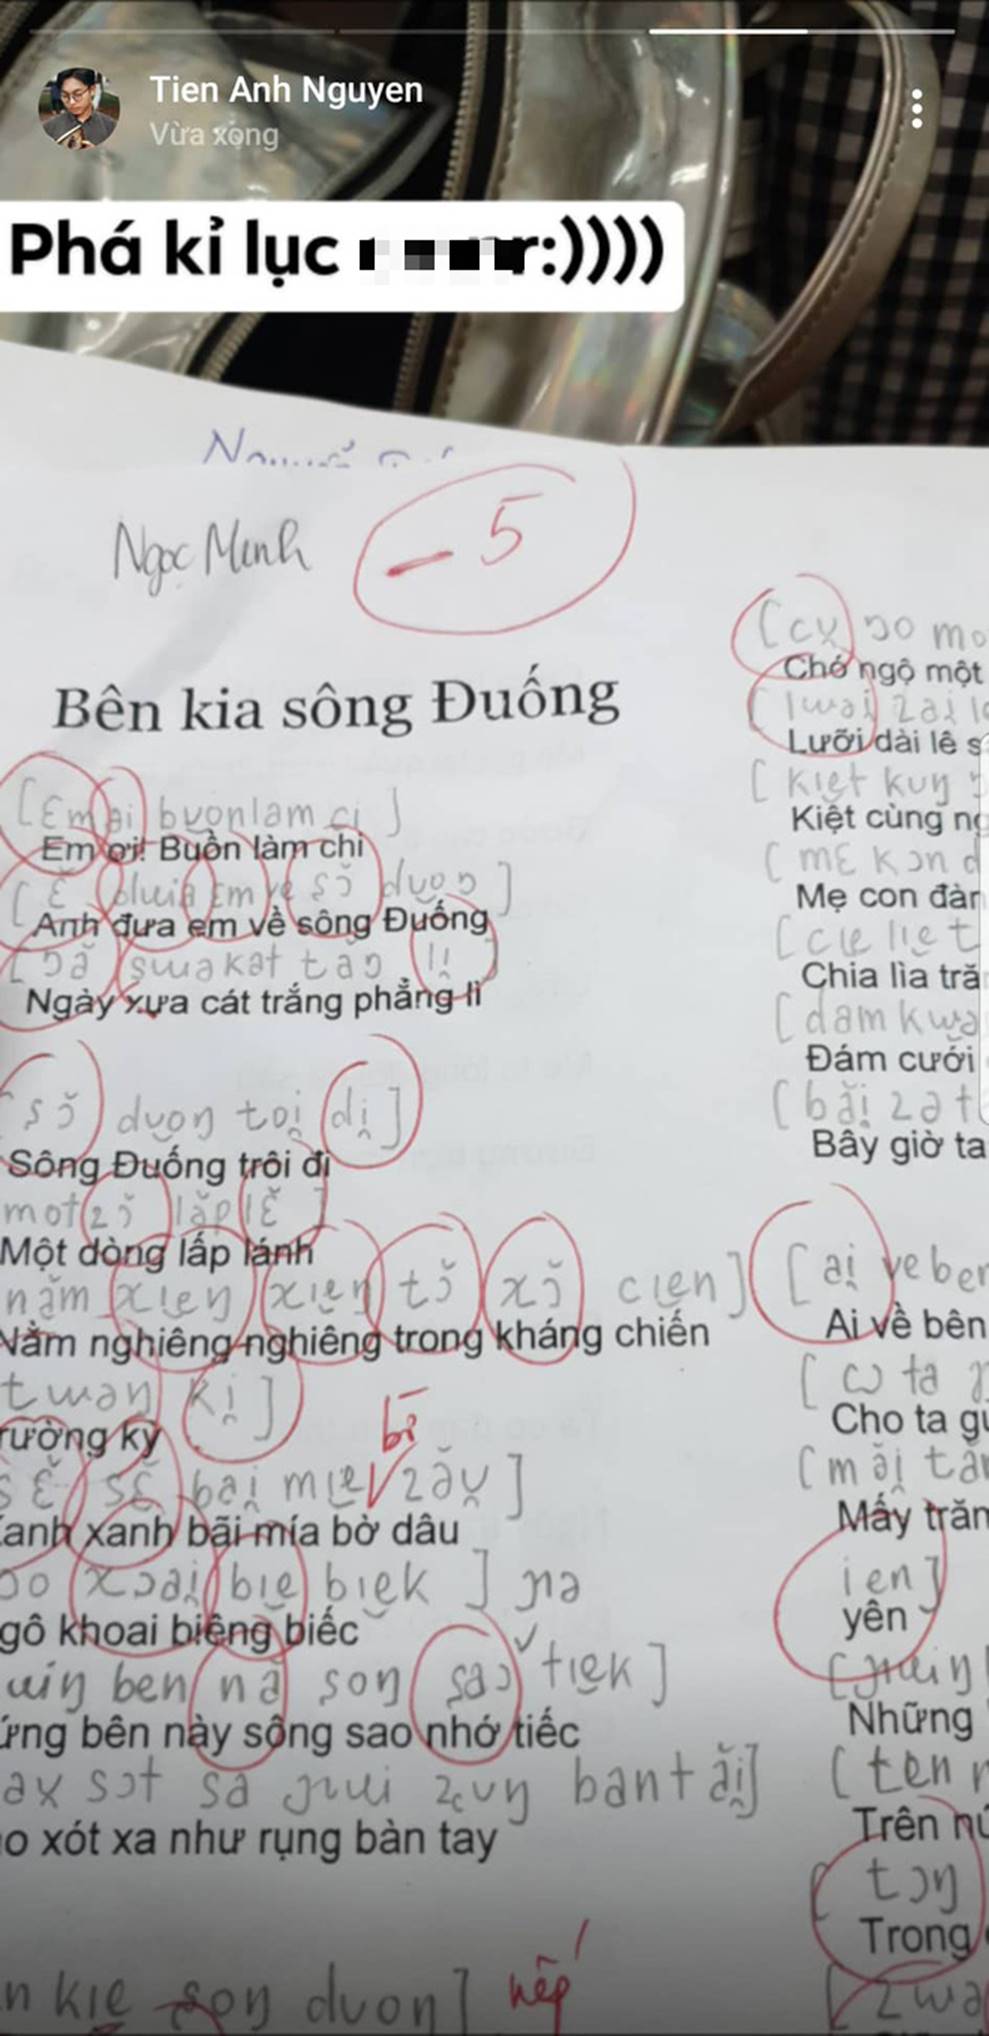 Là Tiếng Việt nhưng không viết không đọc như Tiếng Việt, điểm thi -4, -5, môn học gì khiến sinh viên cuồng quay thế này?-6